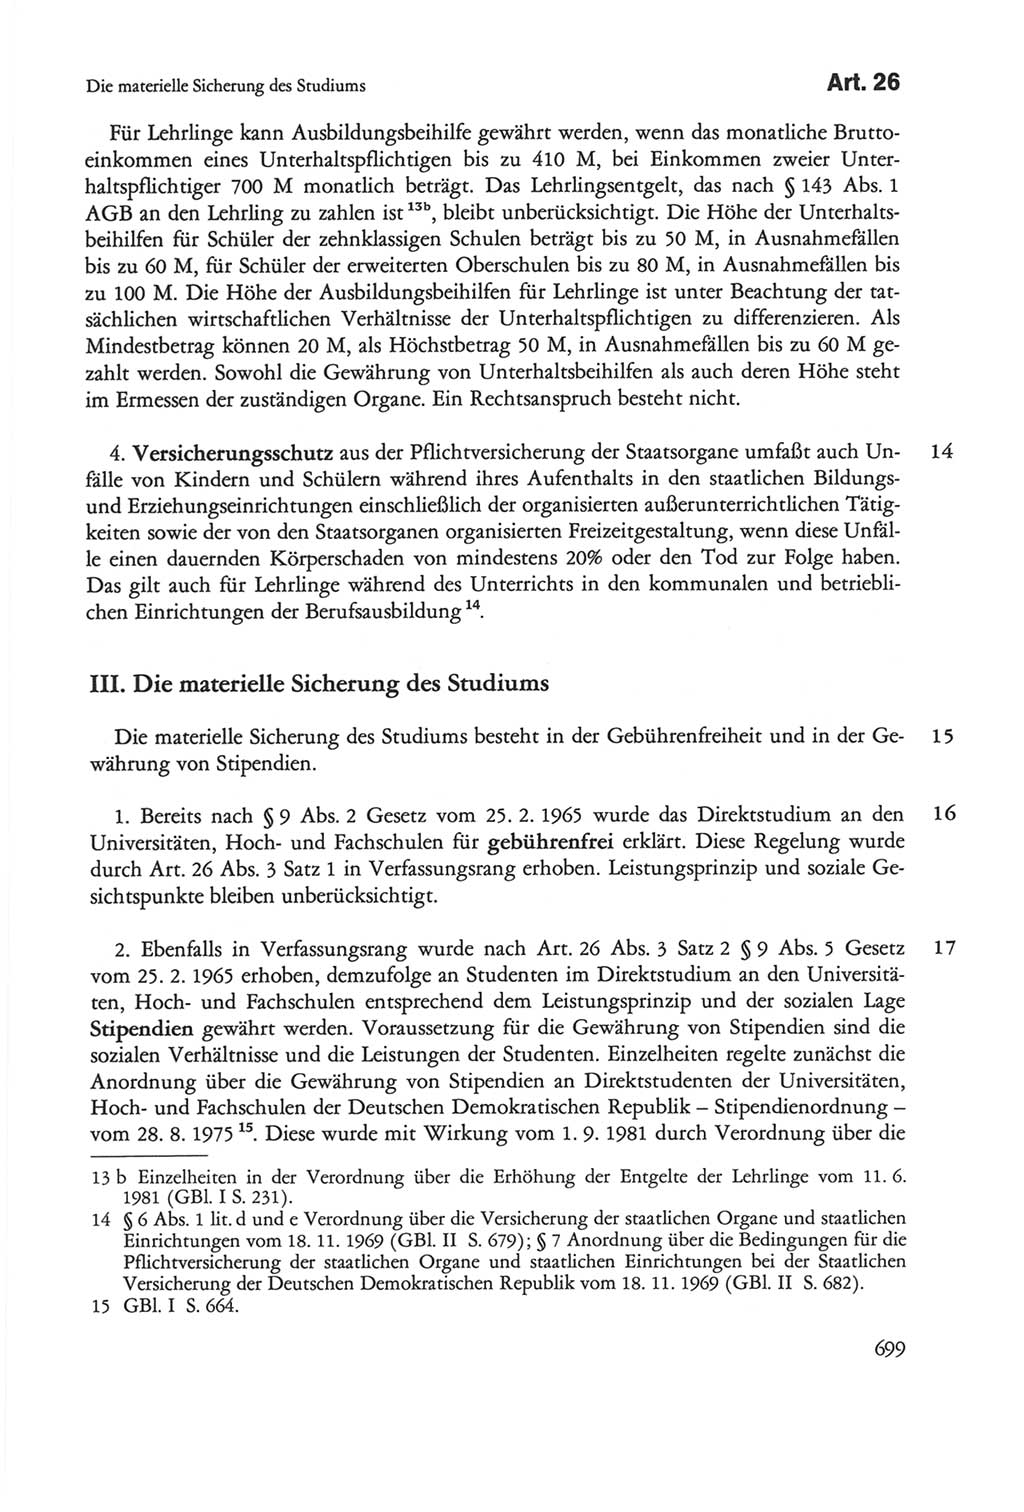 Die sozialistische Verfassung der Deutschen Demokratischen Republik (DDR), Kommentar mit einem Nachtrag 1997, Seite 699 (Soz. Verf. DDR Komm. Nachtr. 1997, S. 699)